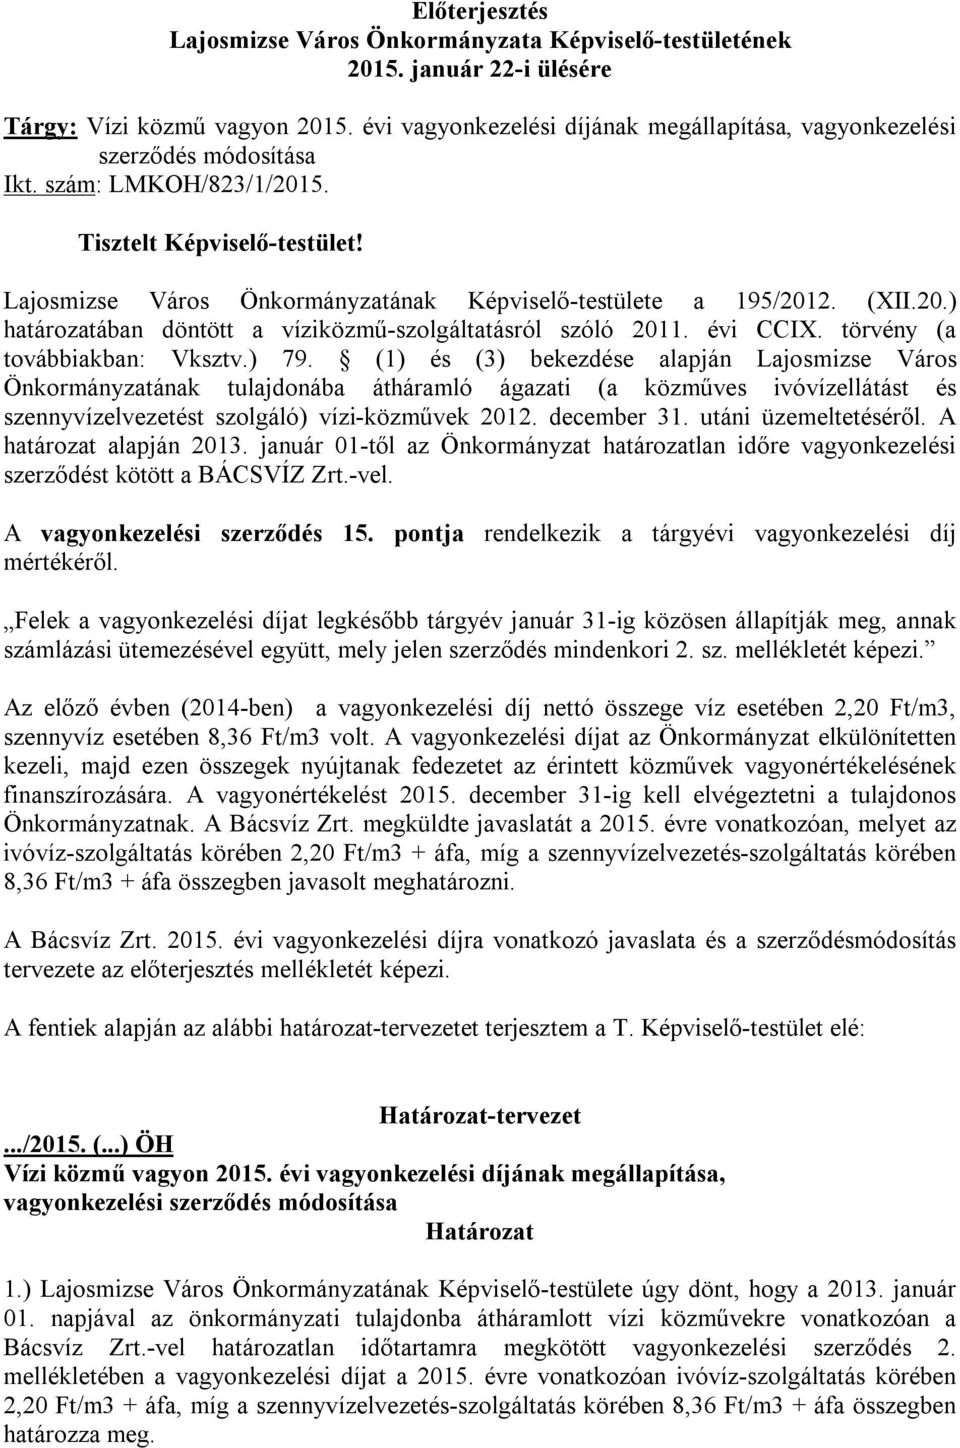 Lajosmizse Város Önkormányzatának Képviselő-testülete a 195/2012. (XII.20.) határozatában döntött a víziközmű-szolgáltatásról szóló 2011. évi CCIX. törvény (a továbbiakban: Vksztv.) 79.